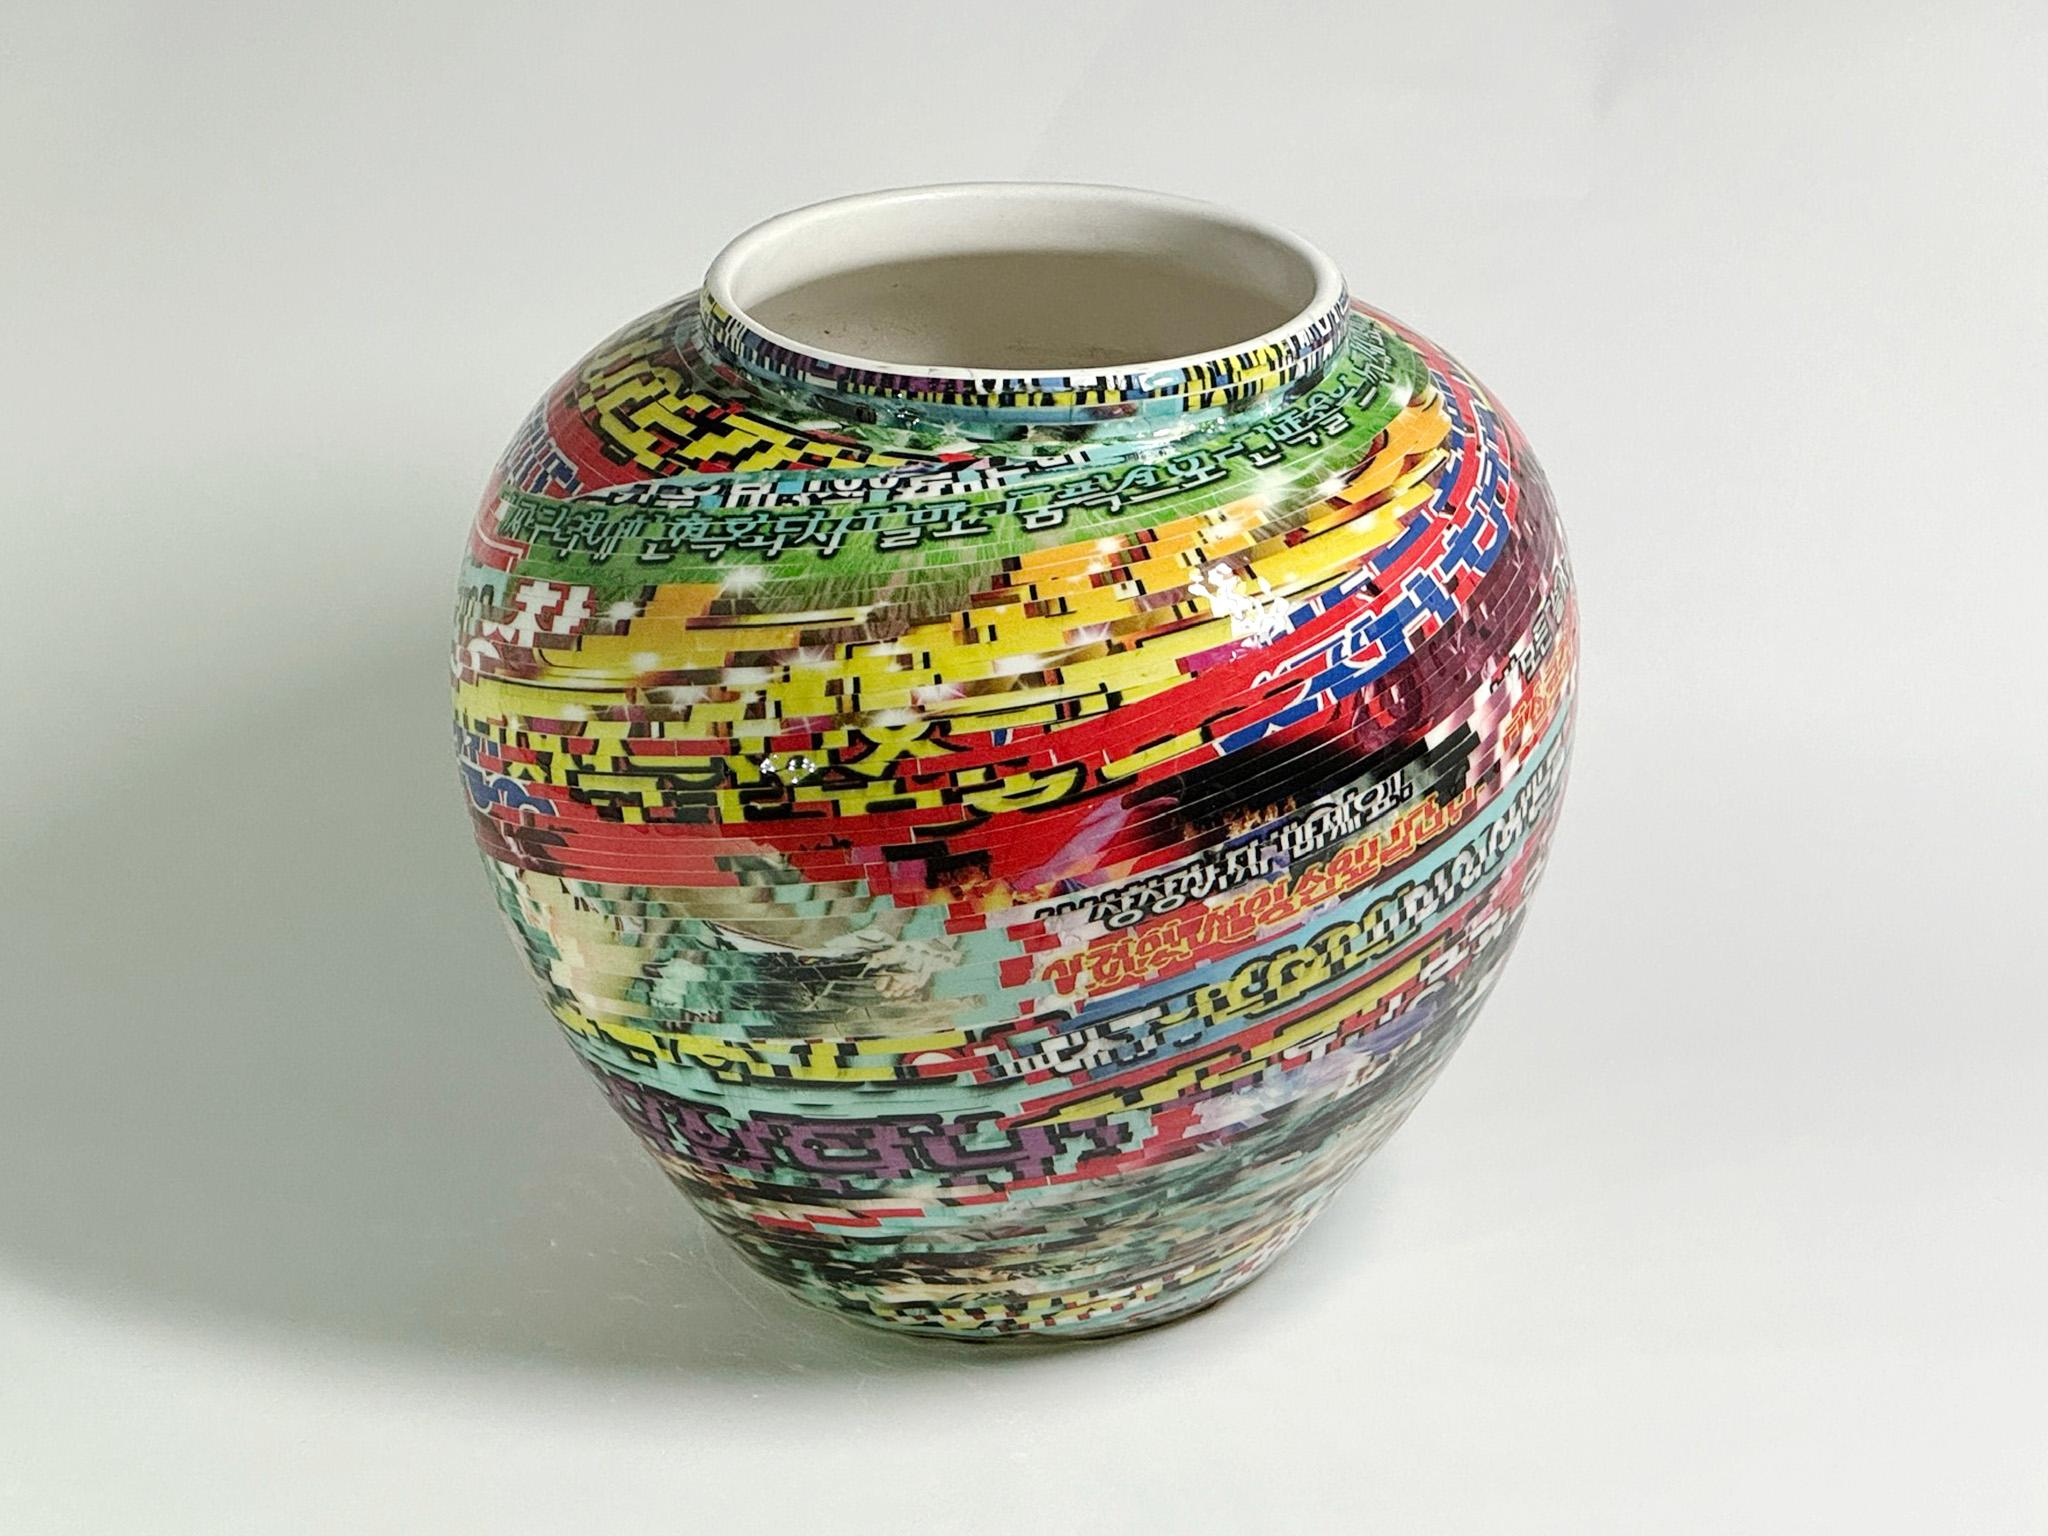 Jjirasi-Vase #02, 2023 von Yongwon Noh
Aus der Serie Jjirasi 
Keramik, PVC-Aufkleber und Harz
Größe: 7,8 Zoll. H x 8.6 in. W x 8.6 in. D
Gewicht: 3kg Unverpackt
Einzigartiges Stück
Signatur auf dem Boden der Vase

Jjirasi Vase erforscht die